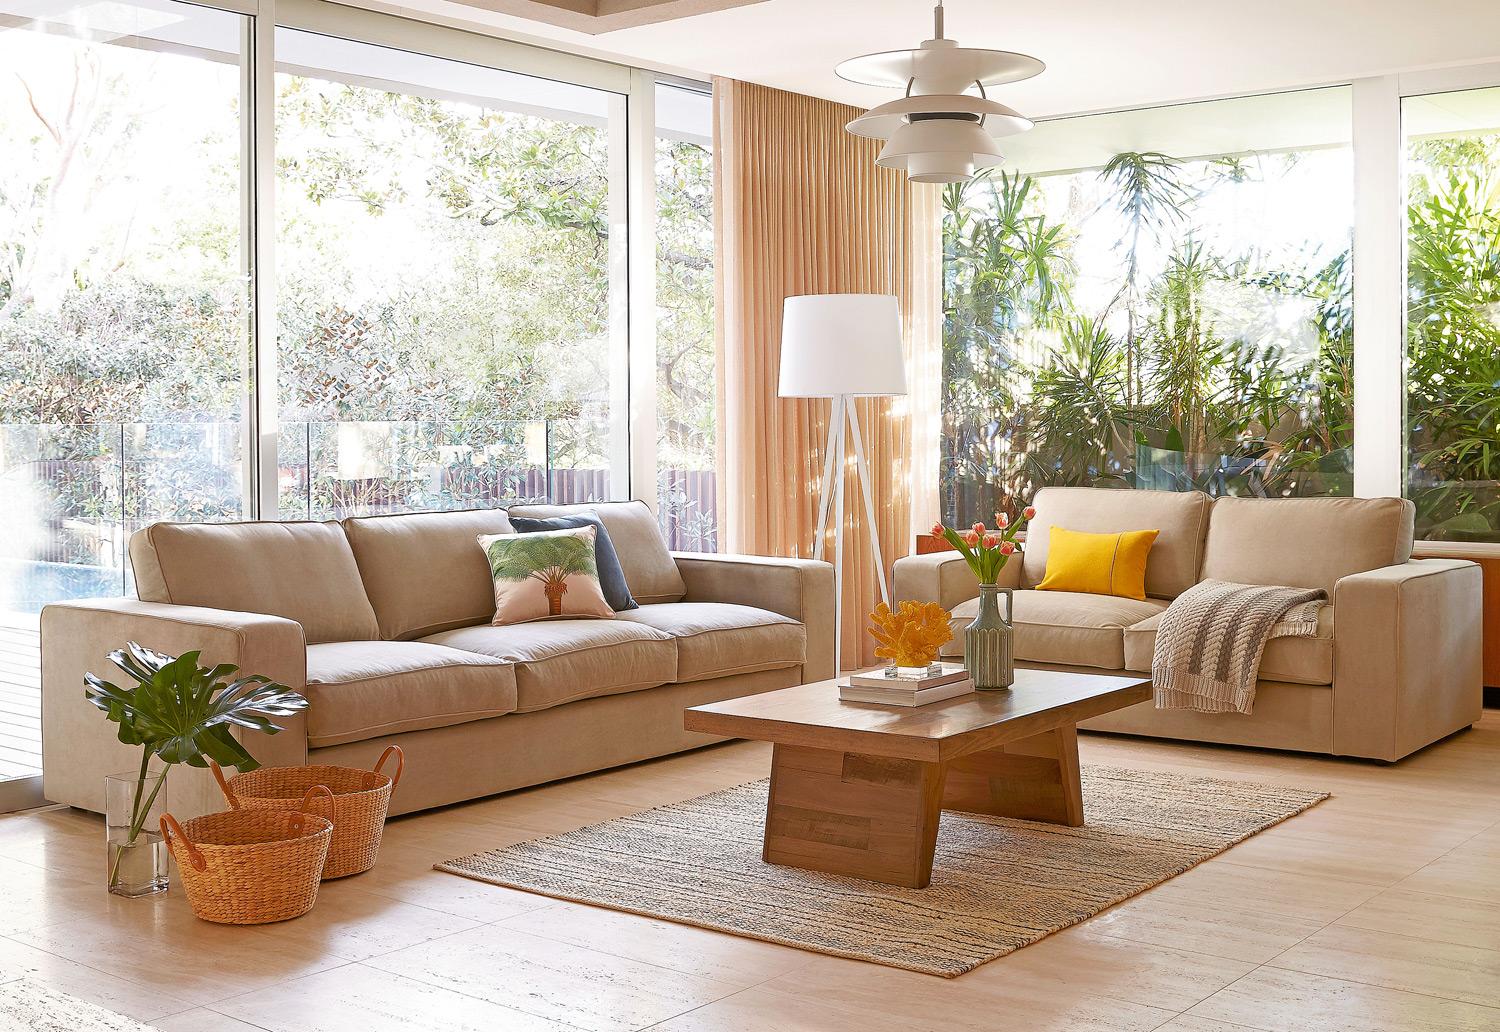 domayne living room furniture